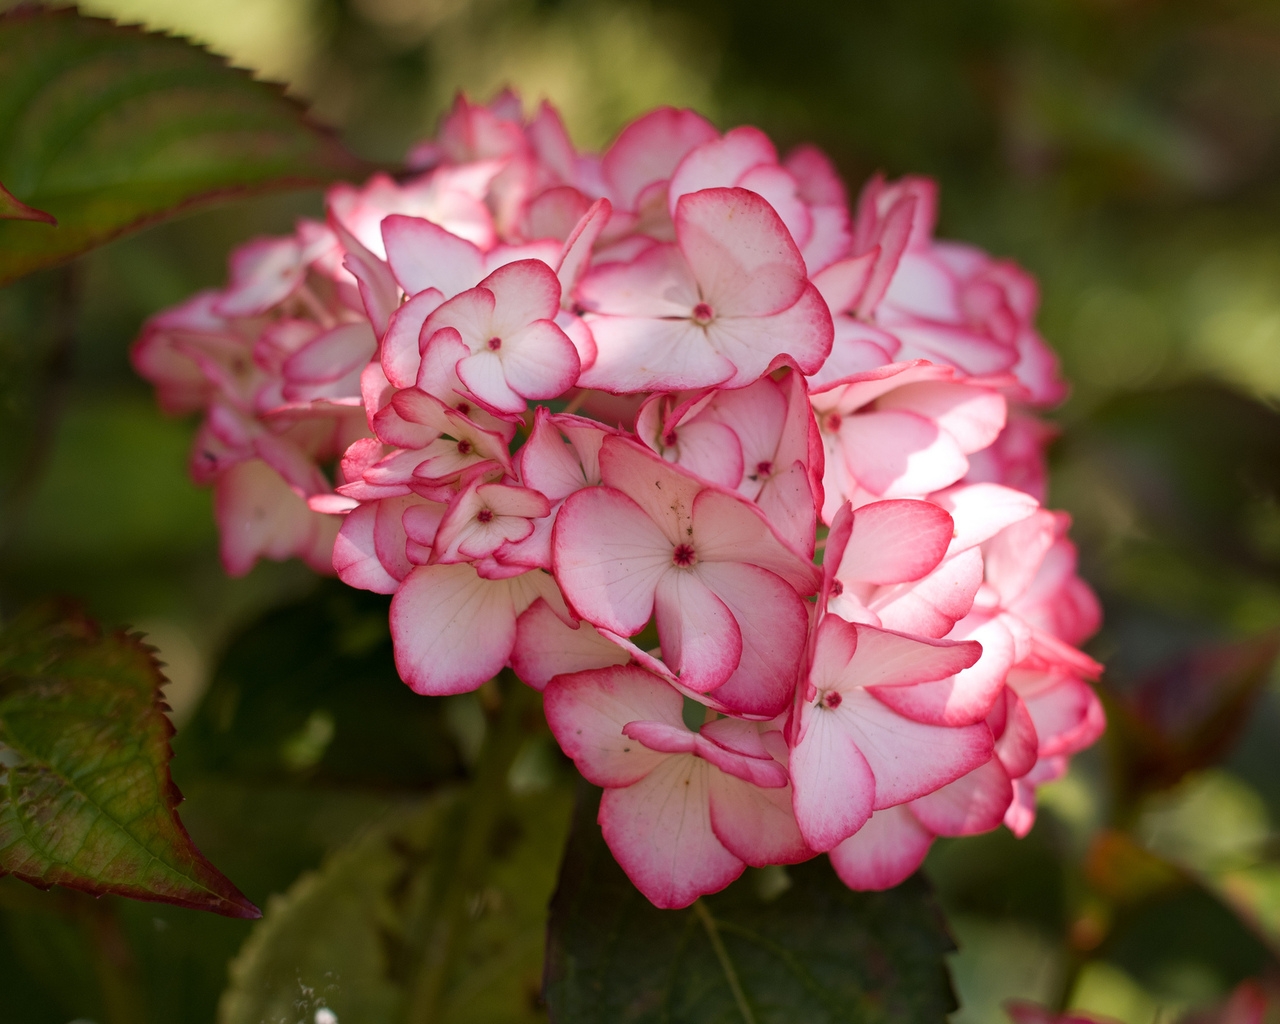 Pink Hydrangea Flower for 1280 x 1024 resolution